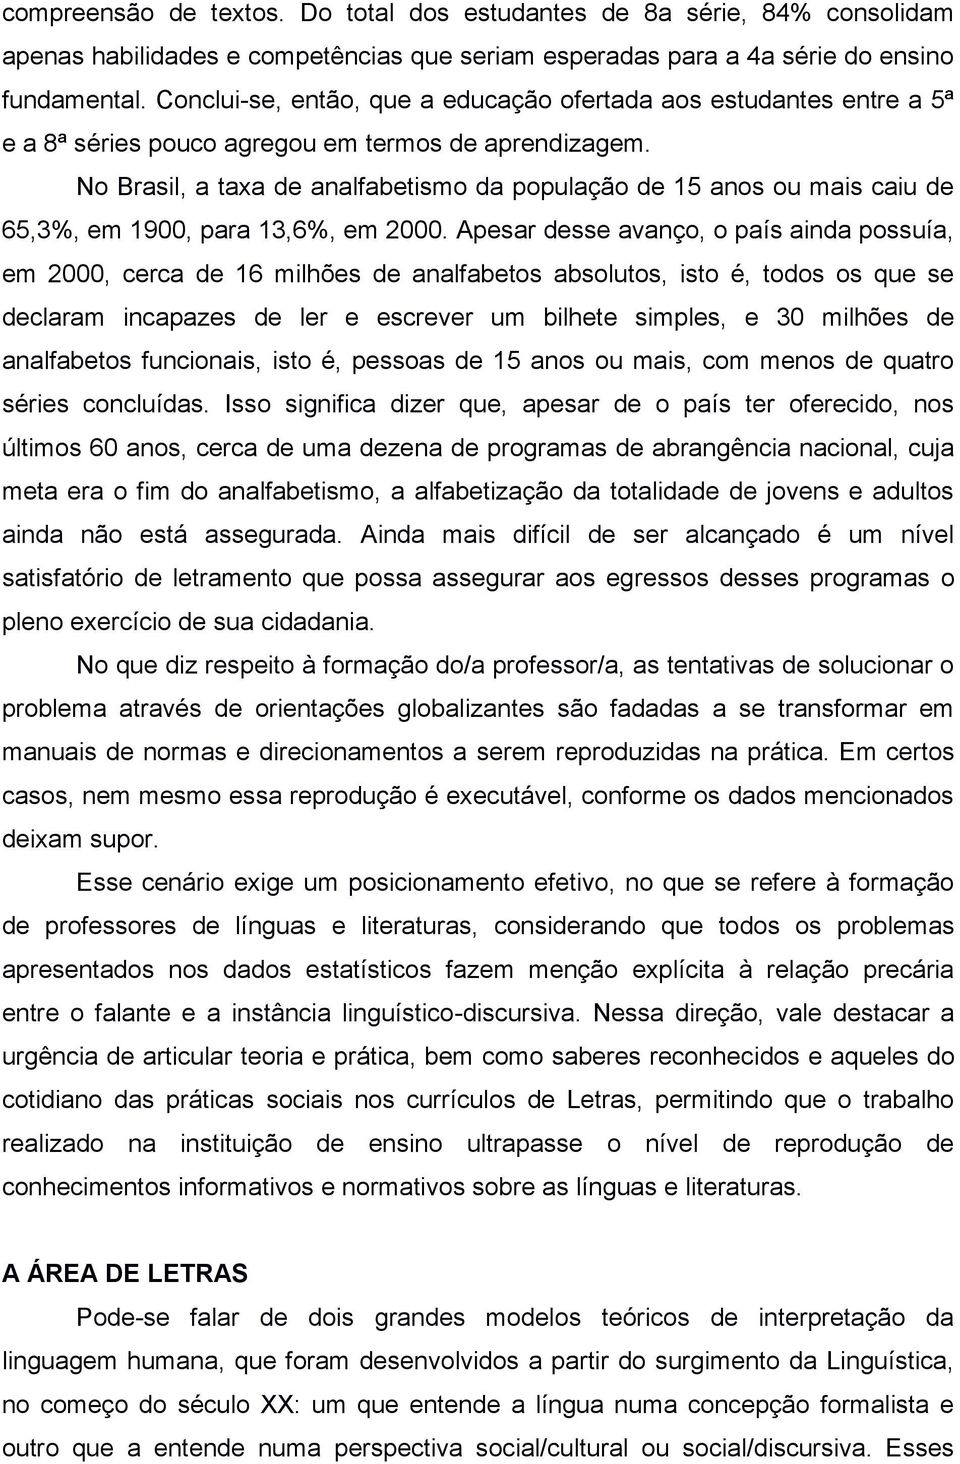 No Brasil, a taxa de analfabetismo da população de 15 anos ou mais caiu de 65,3%, em 1900, para 13,6%, em 2000.